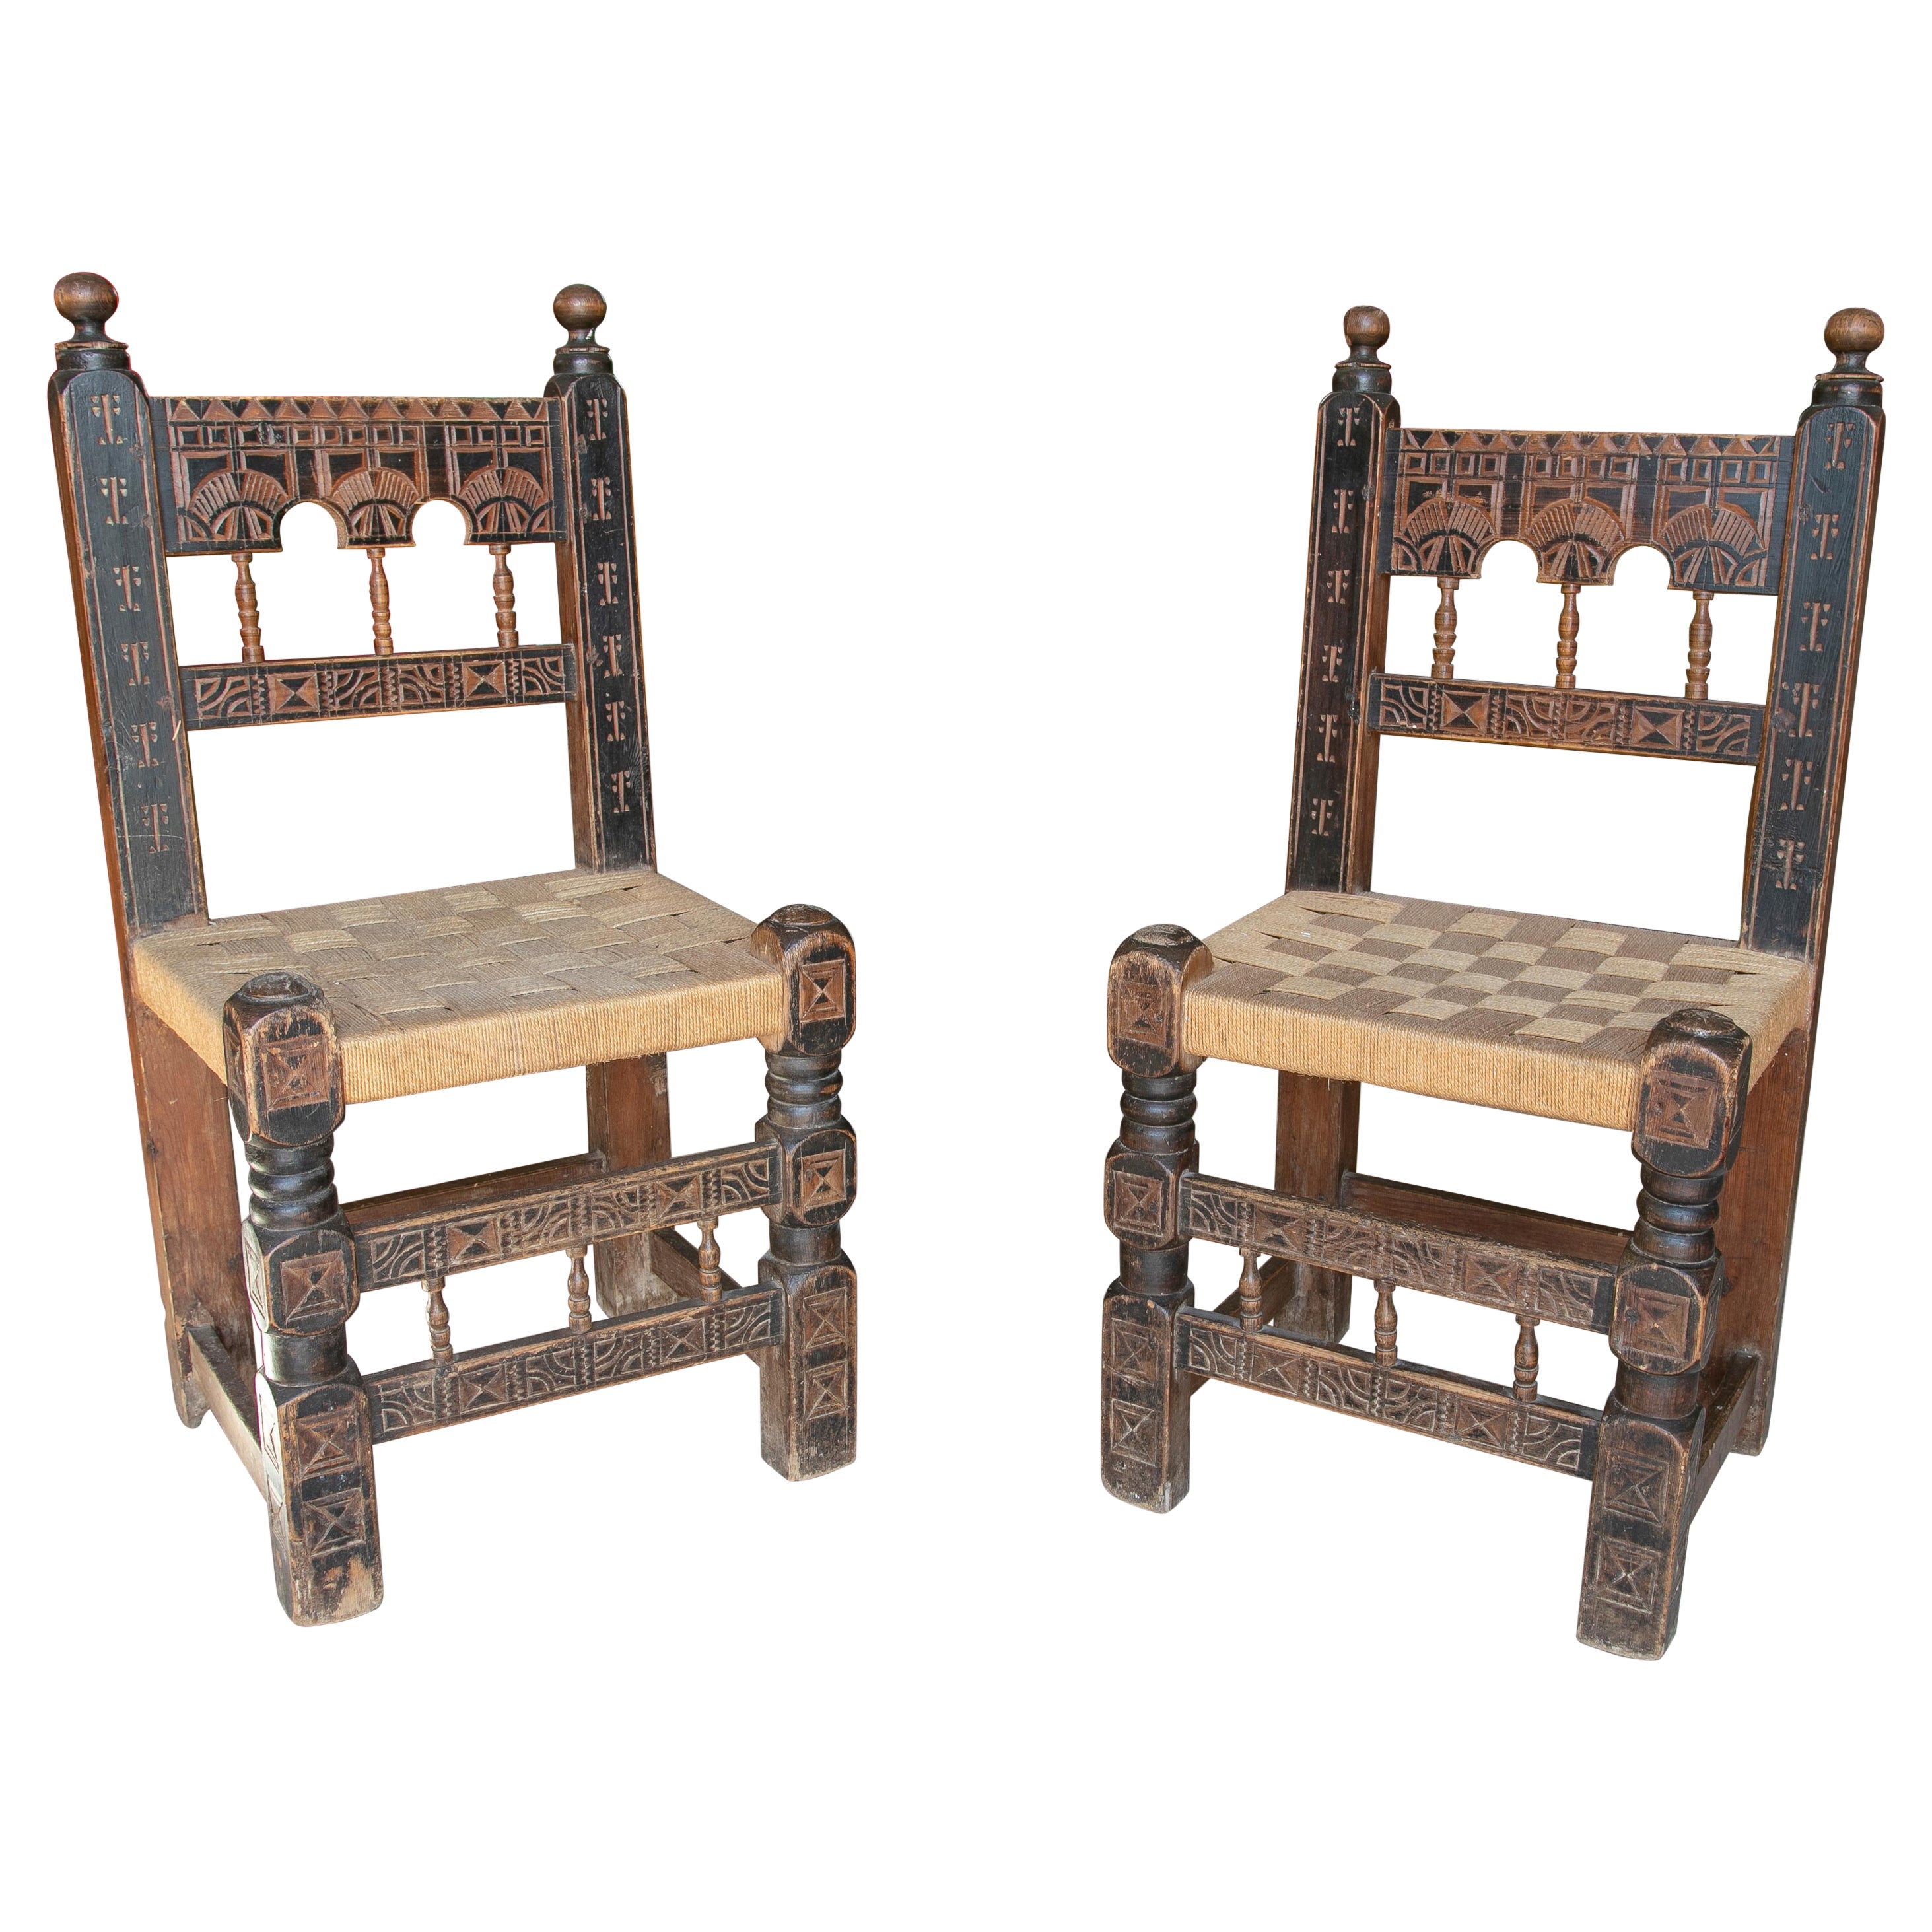 Paar spanische handgeschnitzte bemalte Holzstühle aus den 1920er Jahren mit geflochtenen Binsen-Sitzen